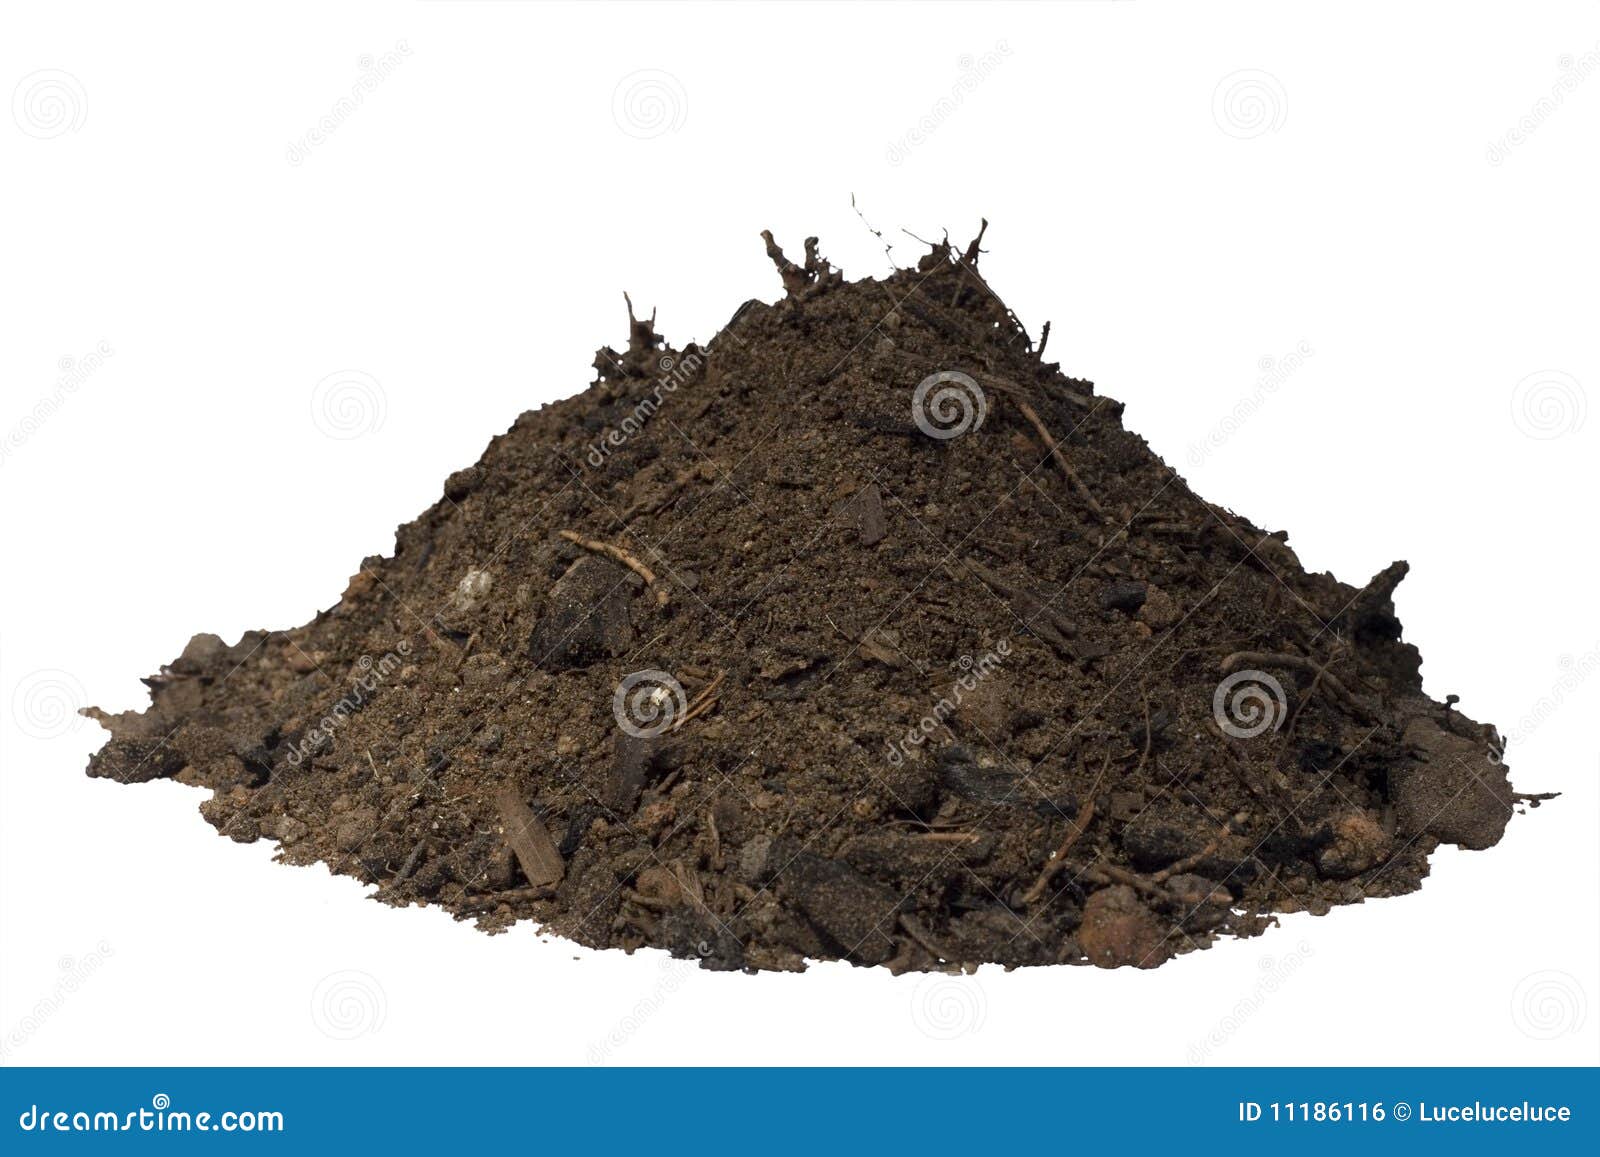 mound of soil 